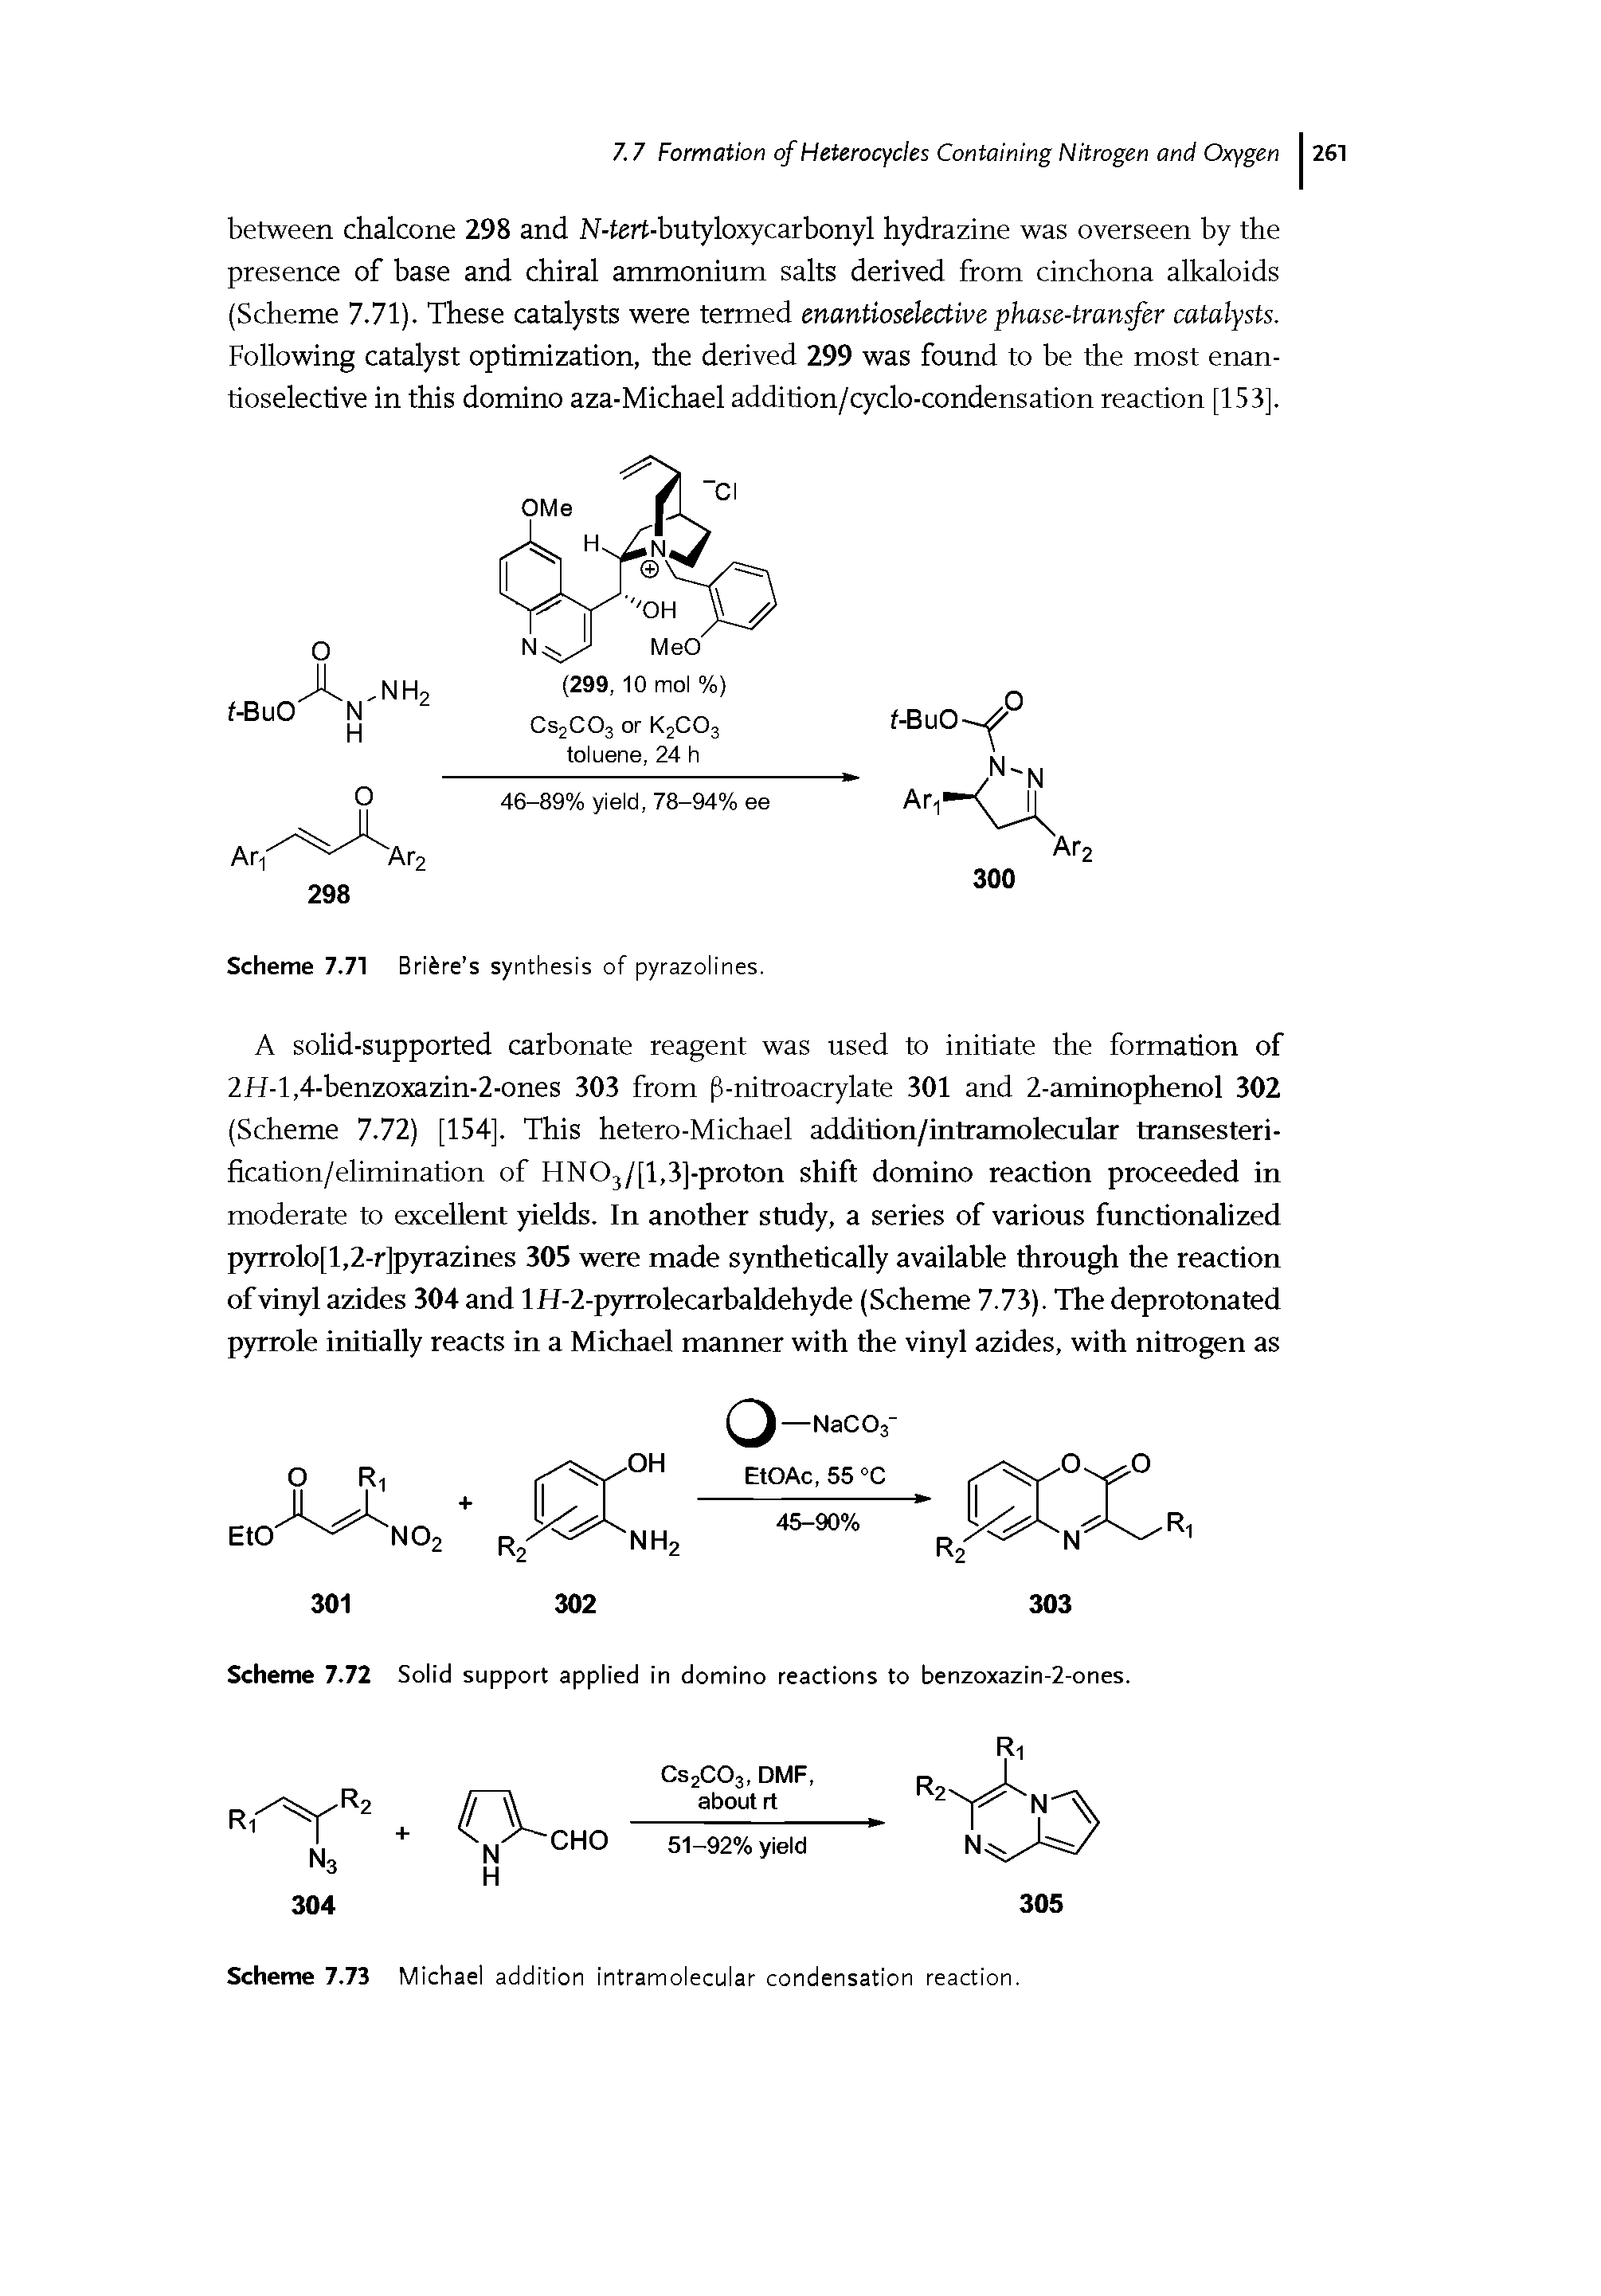 Scheme 7.73 Michael addition intramolecular condensation reaction.